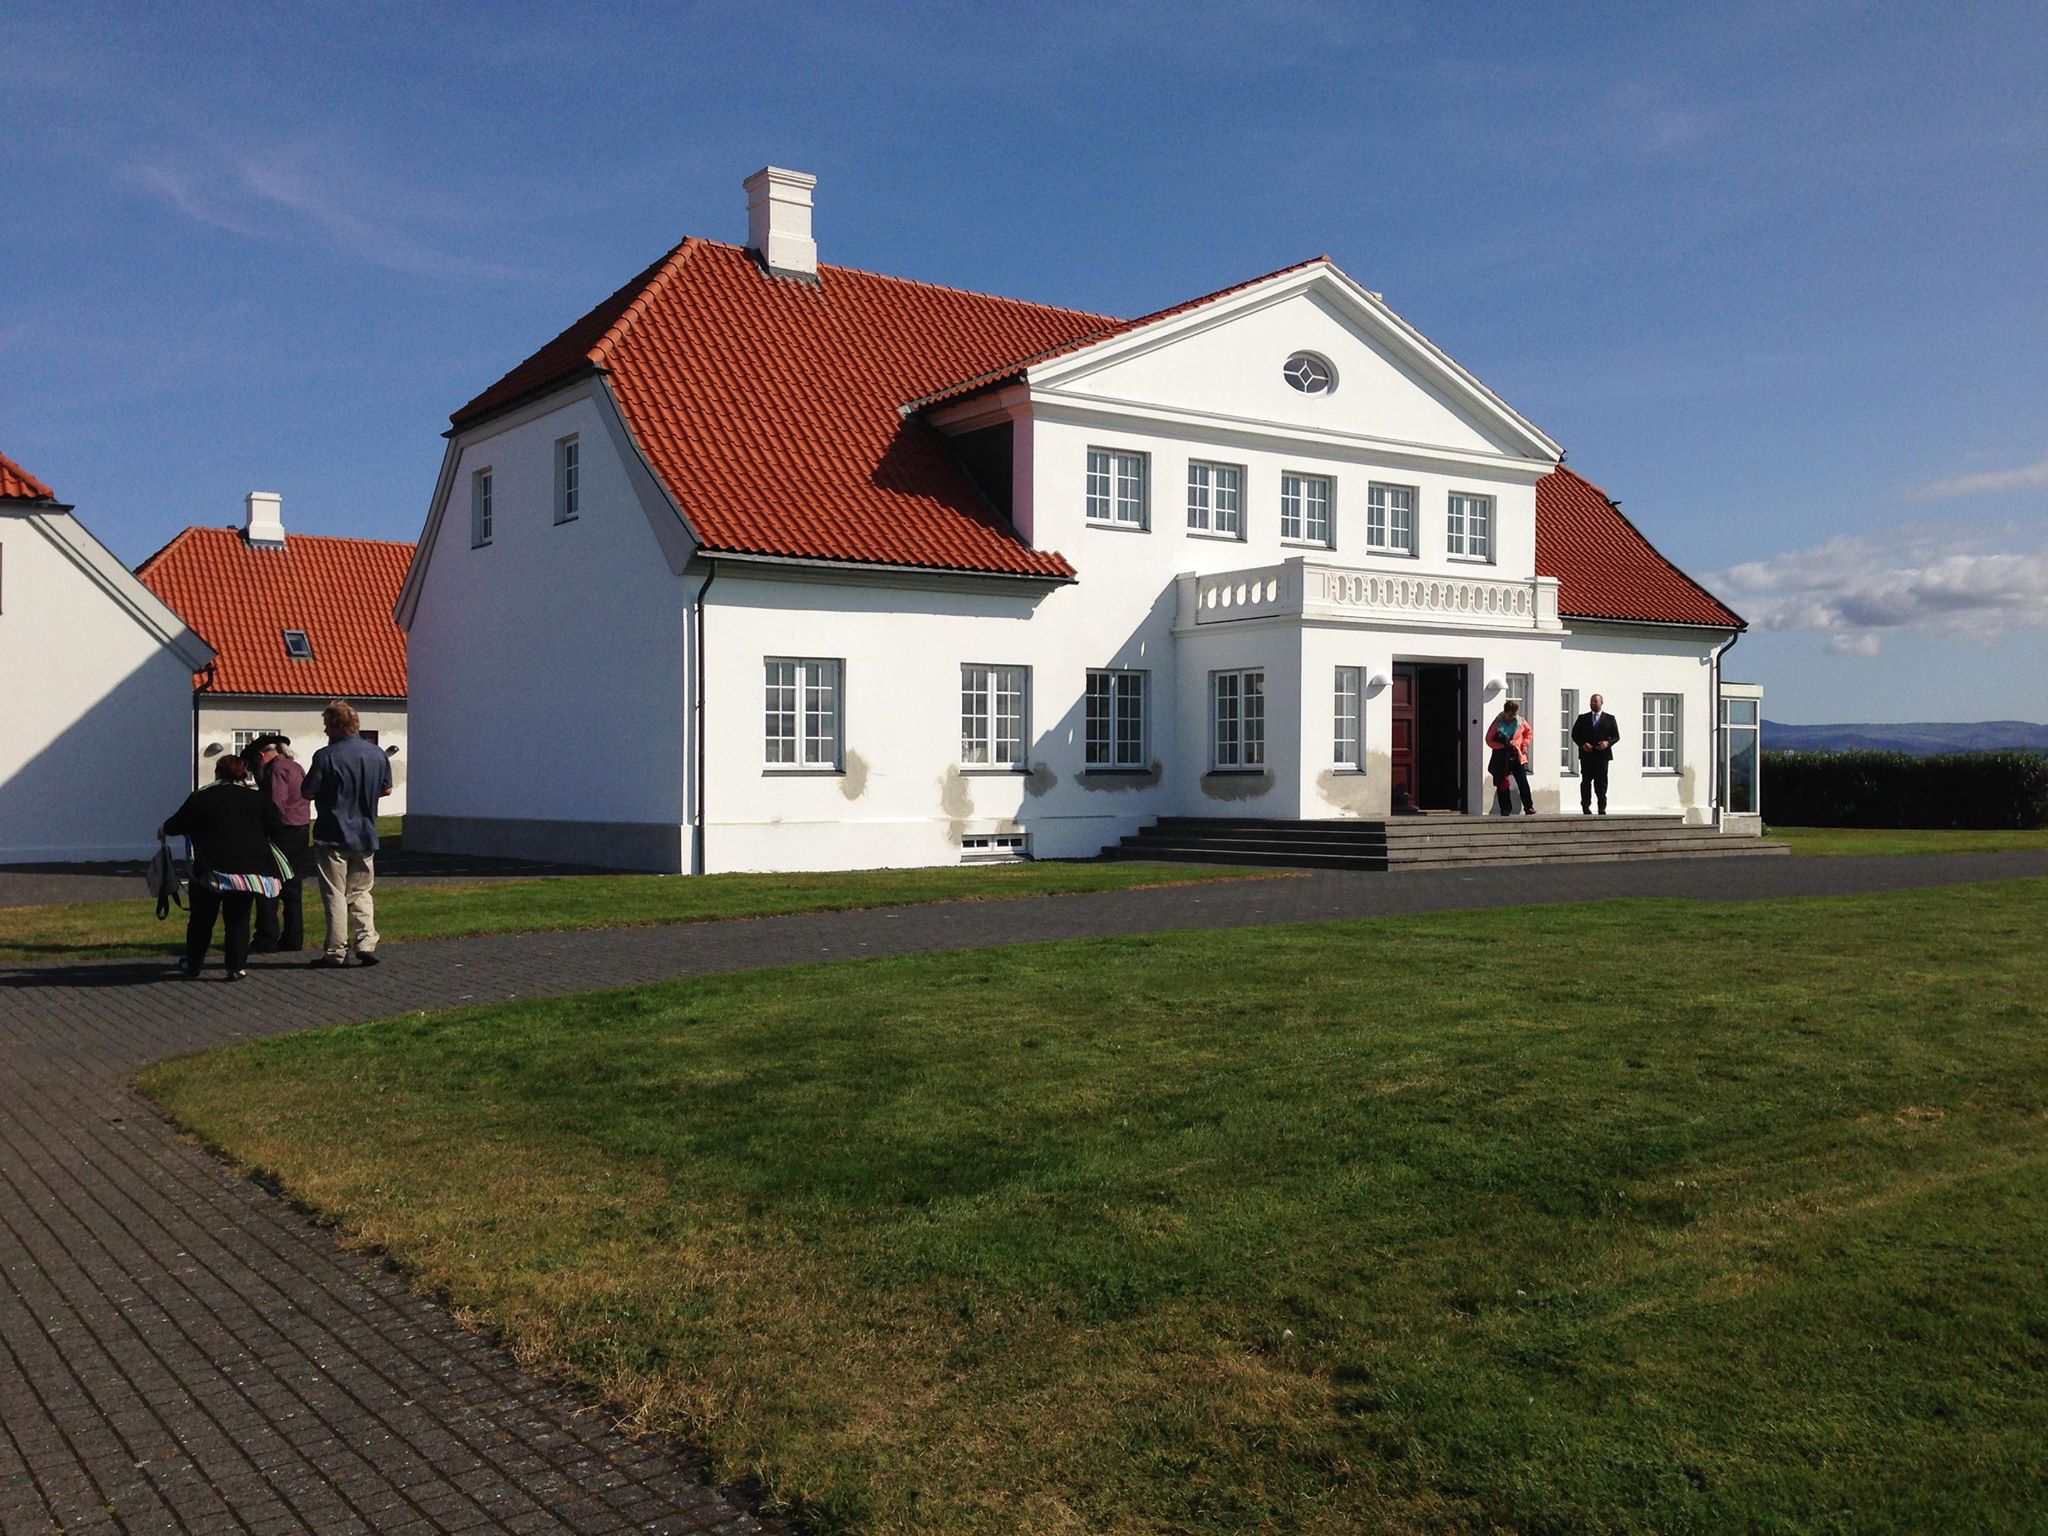 The President's Residence, Iceland